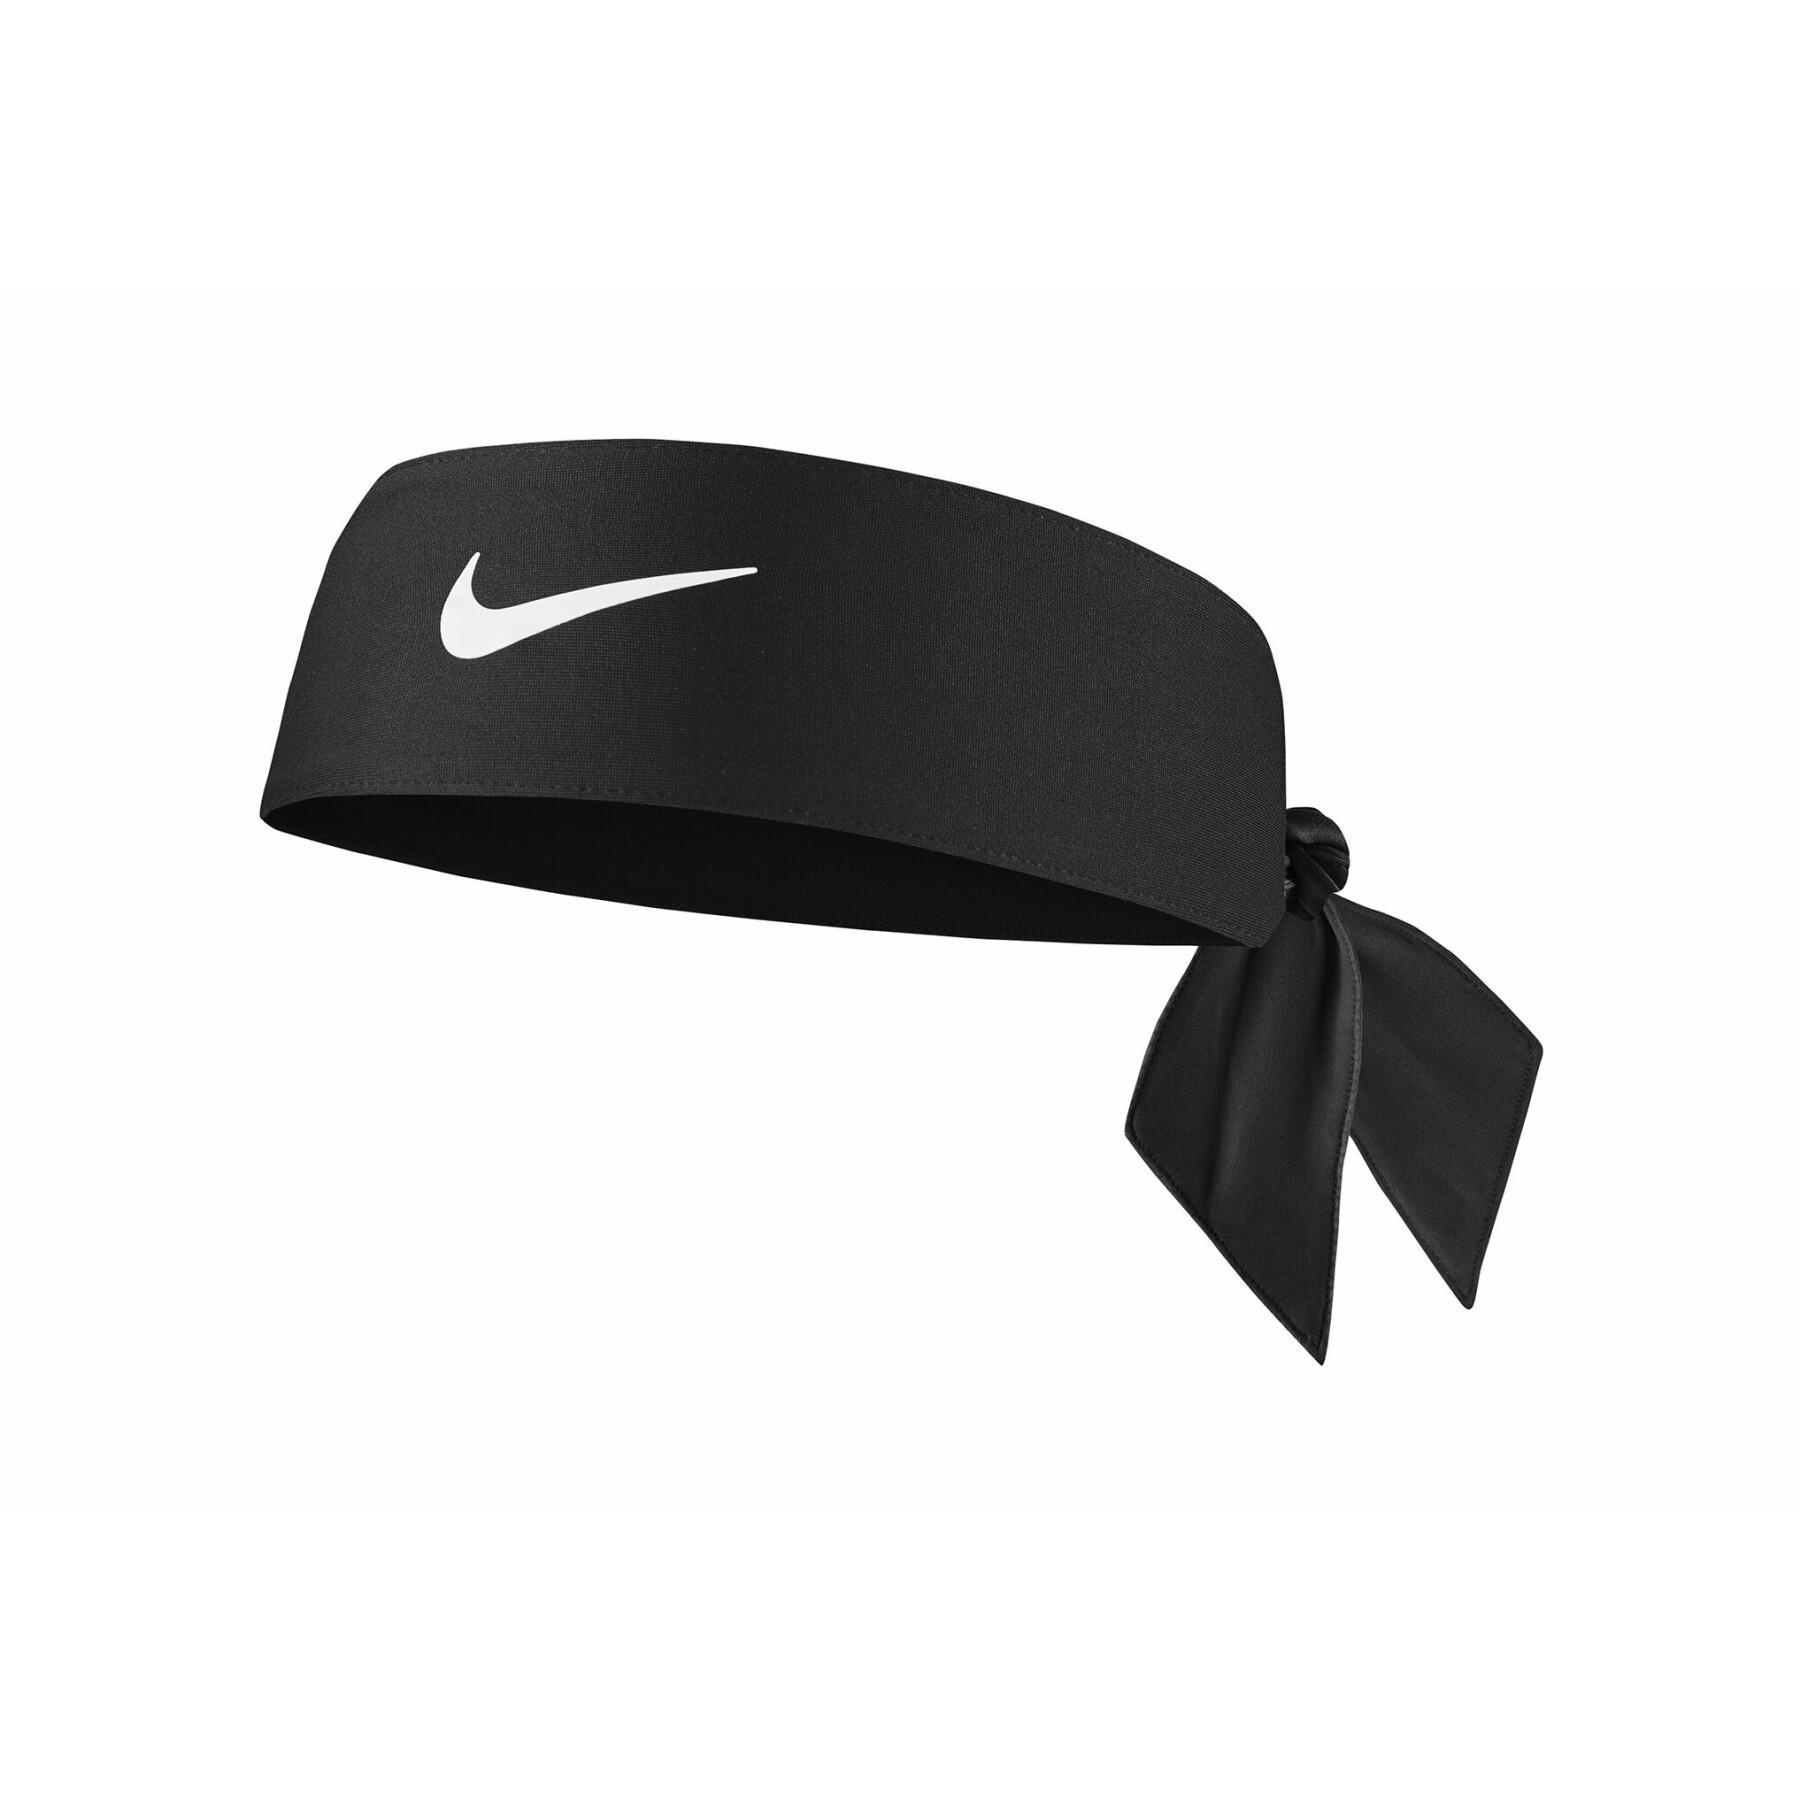 Headband dri-fit - Nike - Brands Handball wear